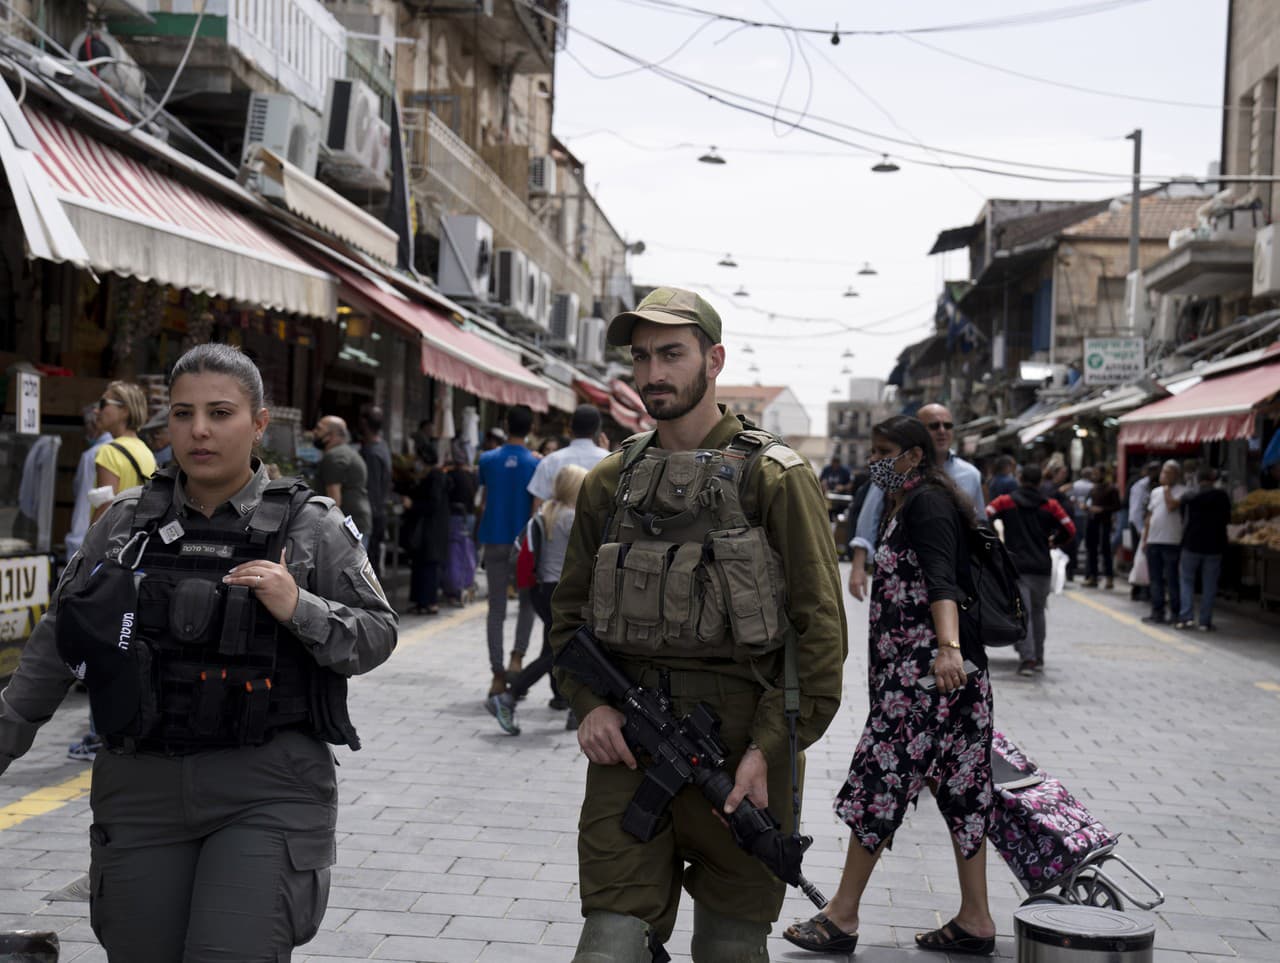 Dôstojníčka izraelskej pohraničnej polície vľavo hliadkuje so svojím armádnym náprotivkom na trhu Mahane Yehuda v Jeruzaleme v rámci sprísnených bezpečnostných opatrení, v nedeľu 3. apríla 2022. Napätie v posledných dňoch prudko vzrástlo po tom, čo palest